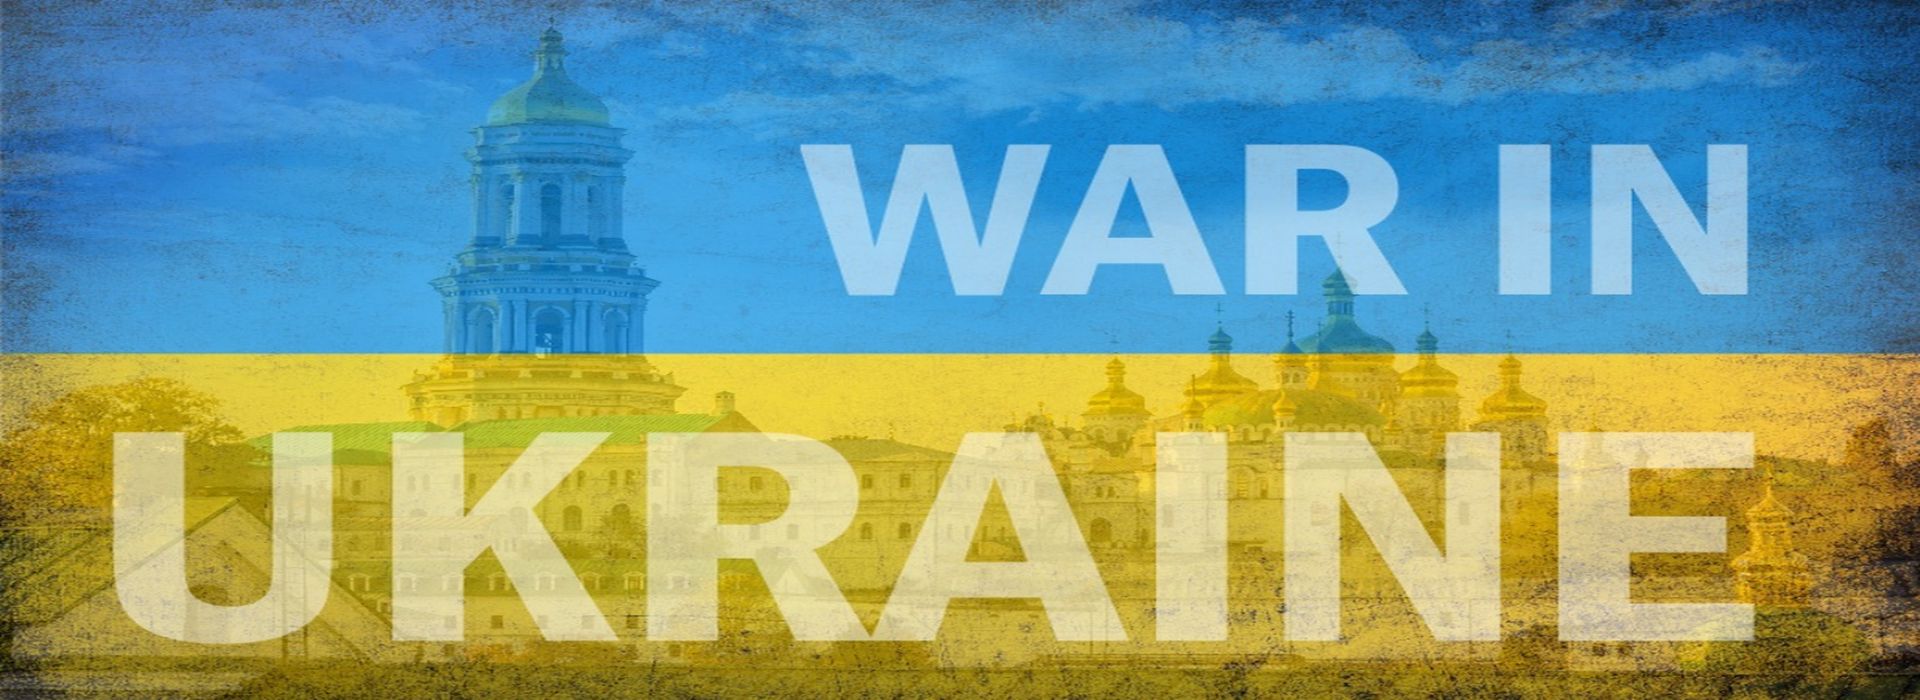 Ukraine at War Update 10